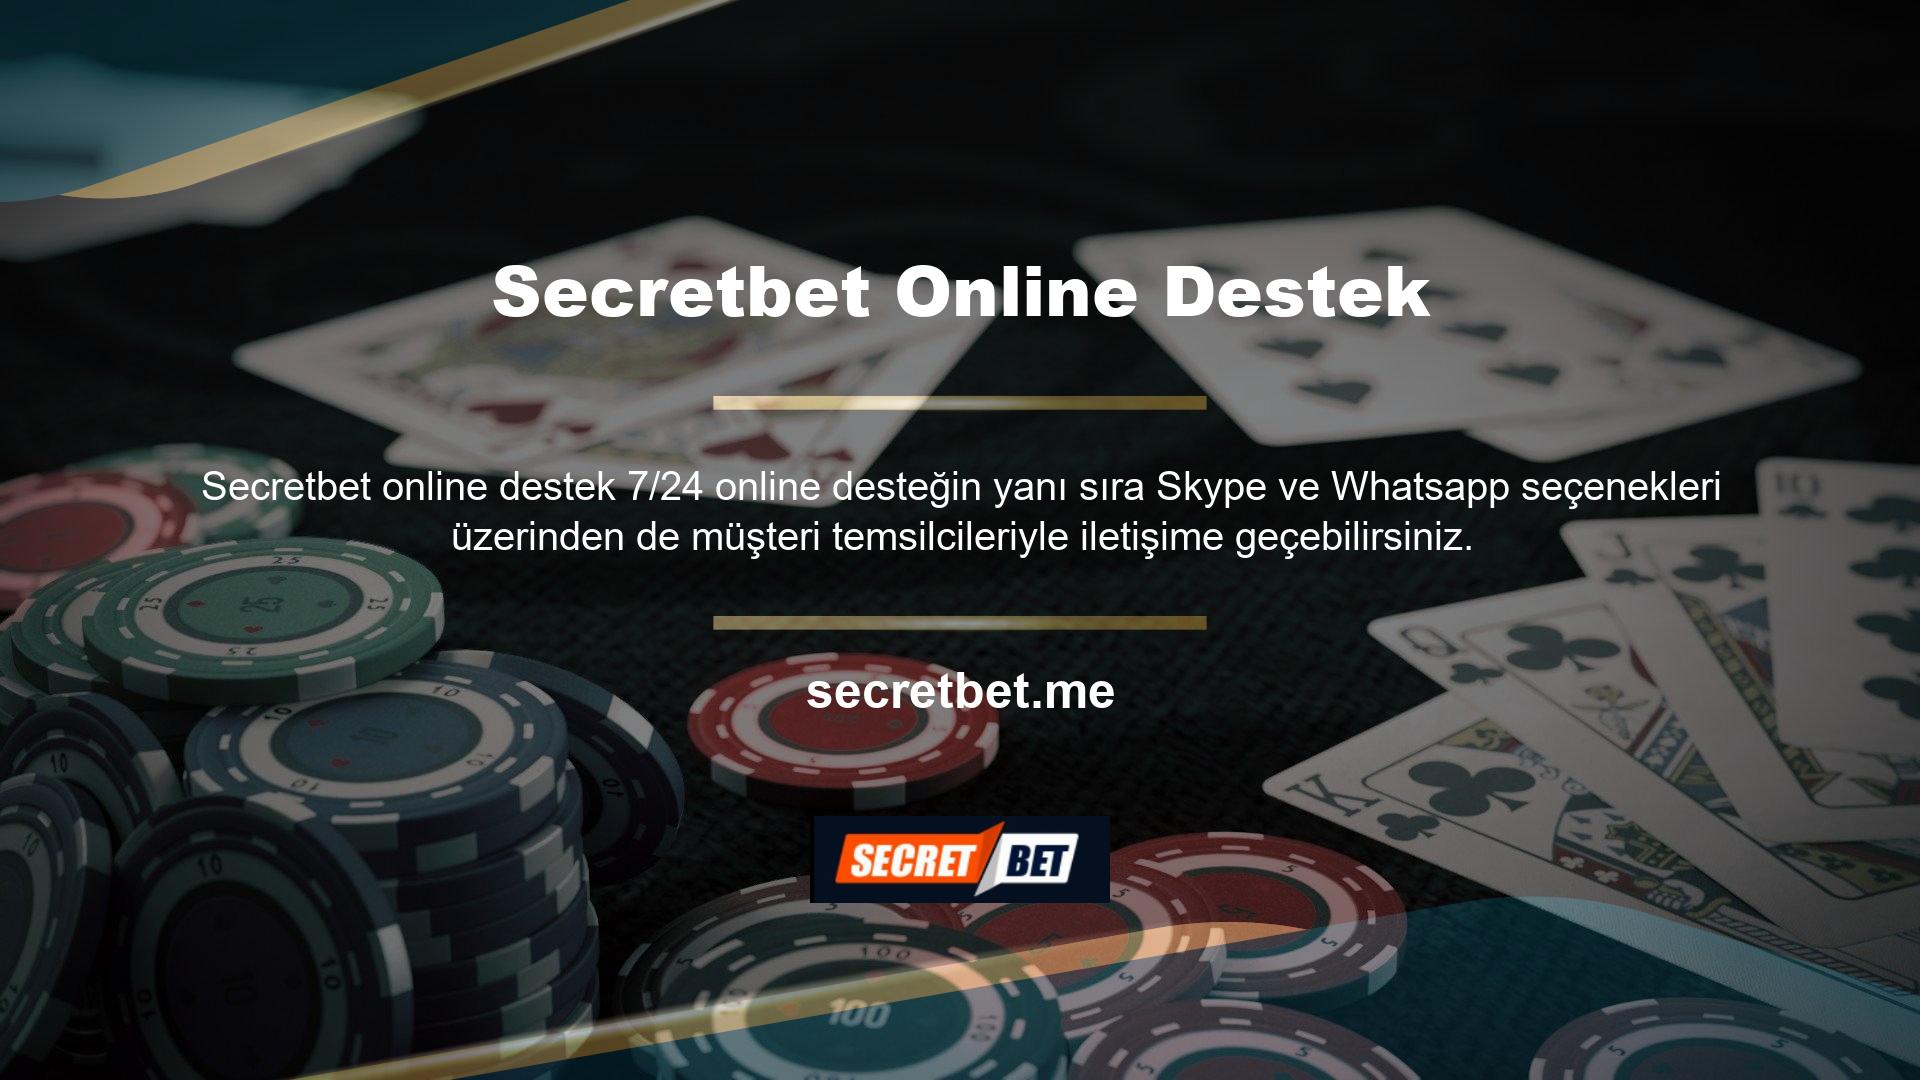 Secretbet, diğer tüm yasadışı casino siteleri gibi, oyuncular arasında adres değiştirmeden çalışır